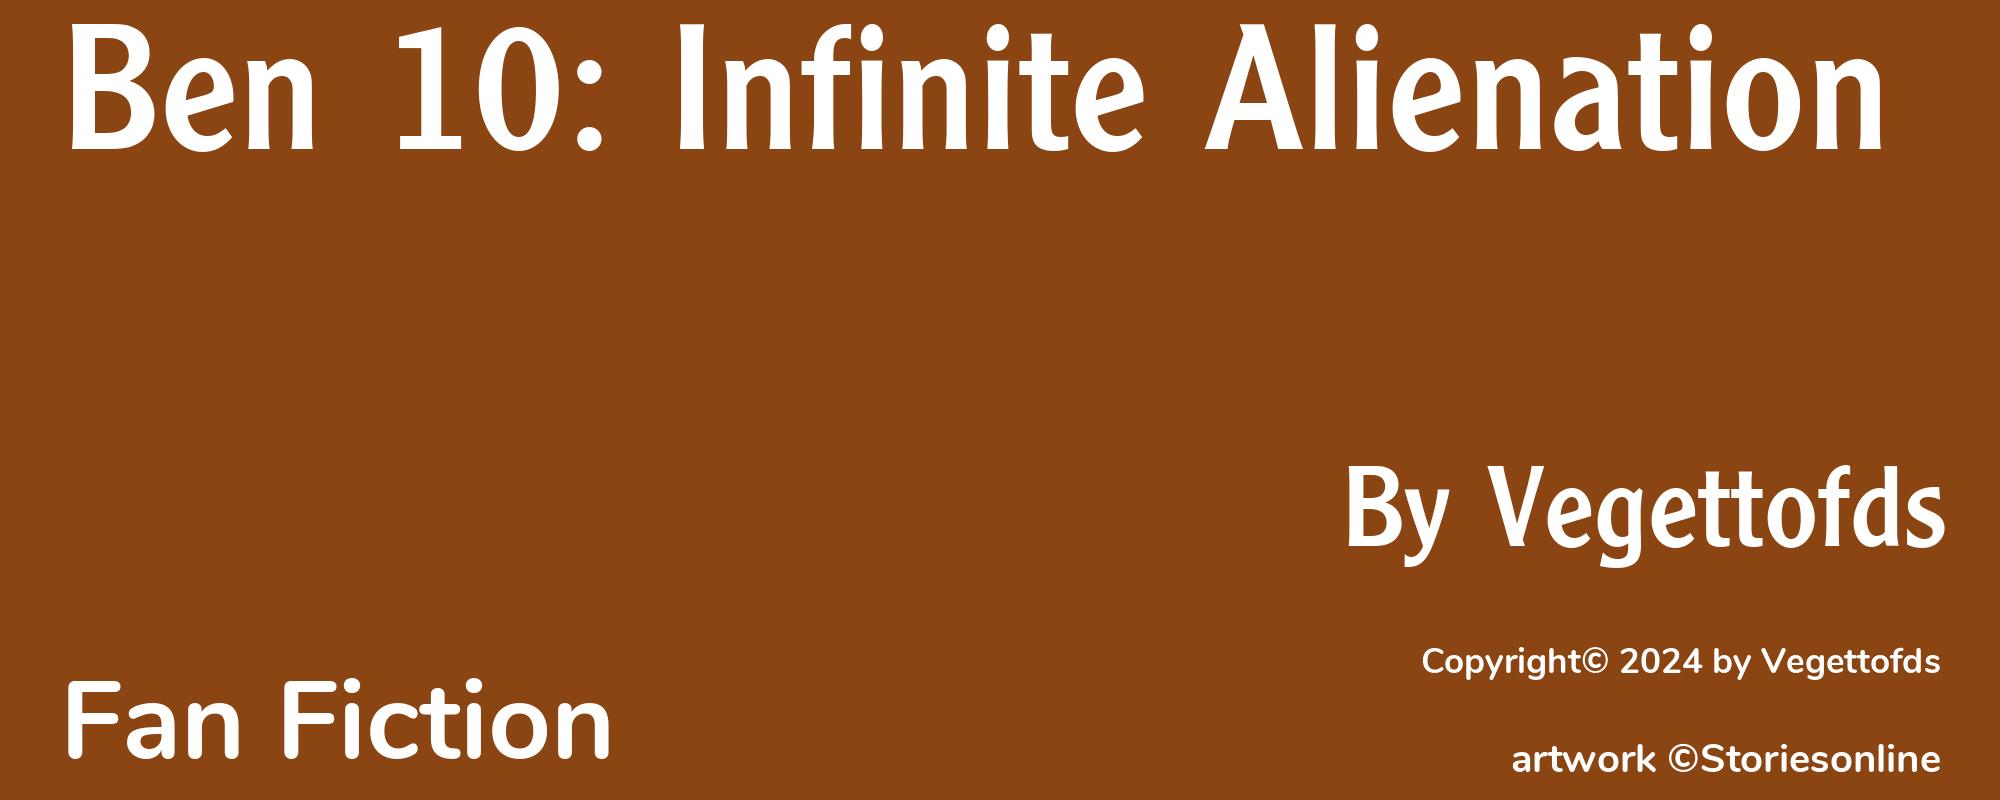 Ben 10: Infinite Alienation - Cover